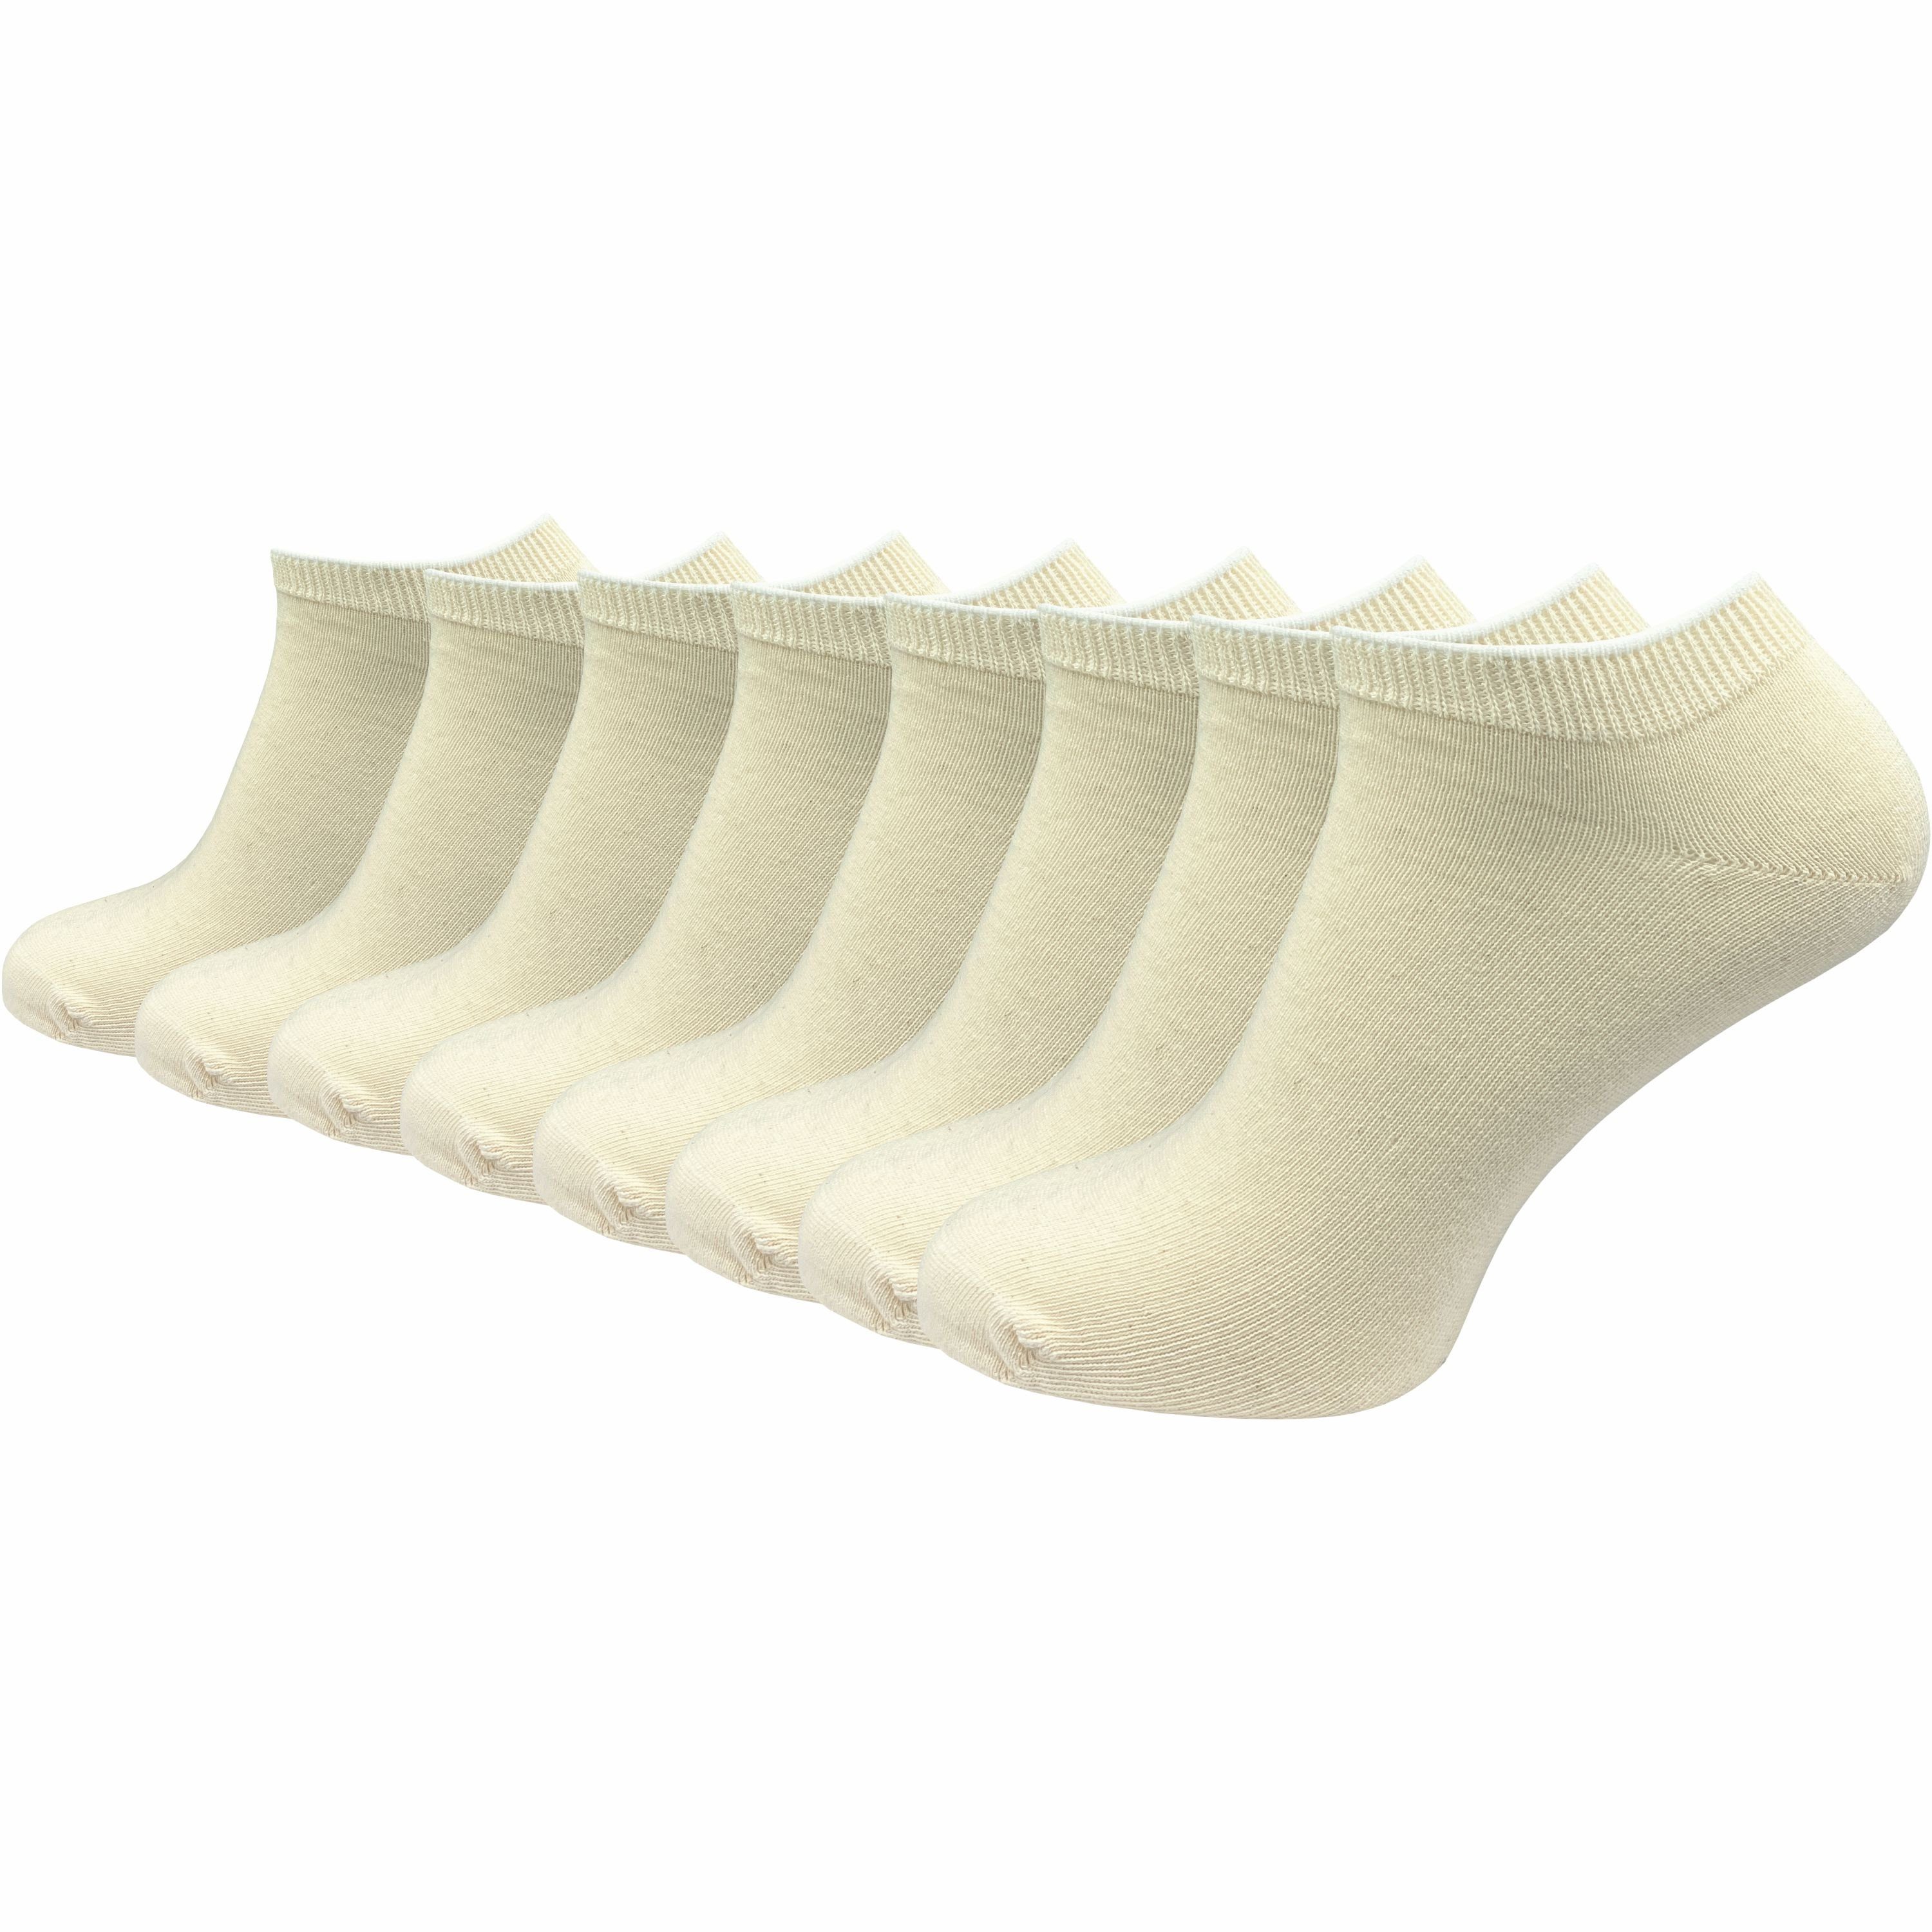 GAWILO Sneakersocken "Natur" für Damen & Herren aus 100% Baumwolle u.a. in weiß & schwarz (8 Paar) ohne drückende Naht über den Zehen - Spitze handgekettelt